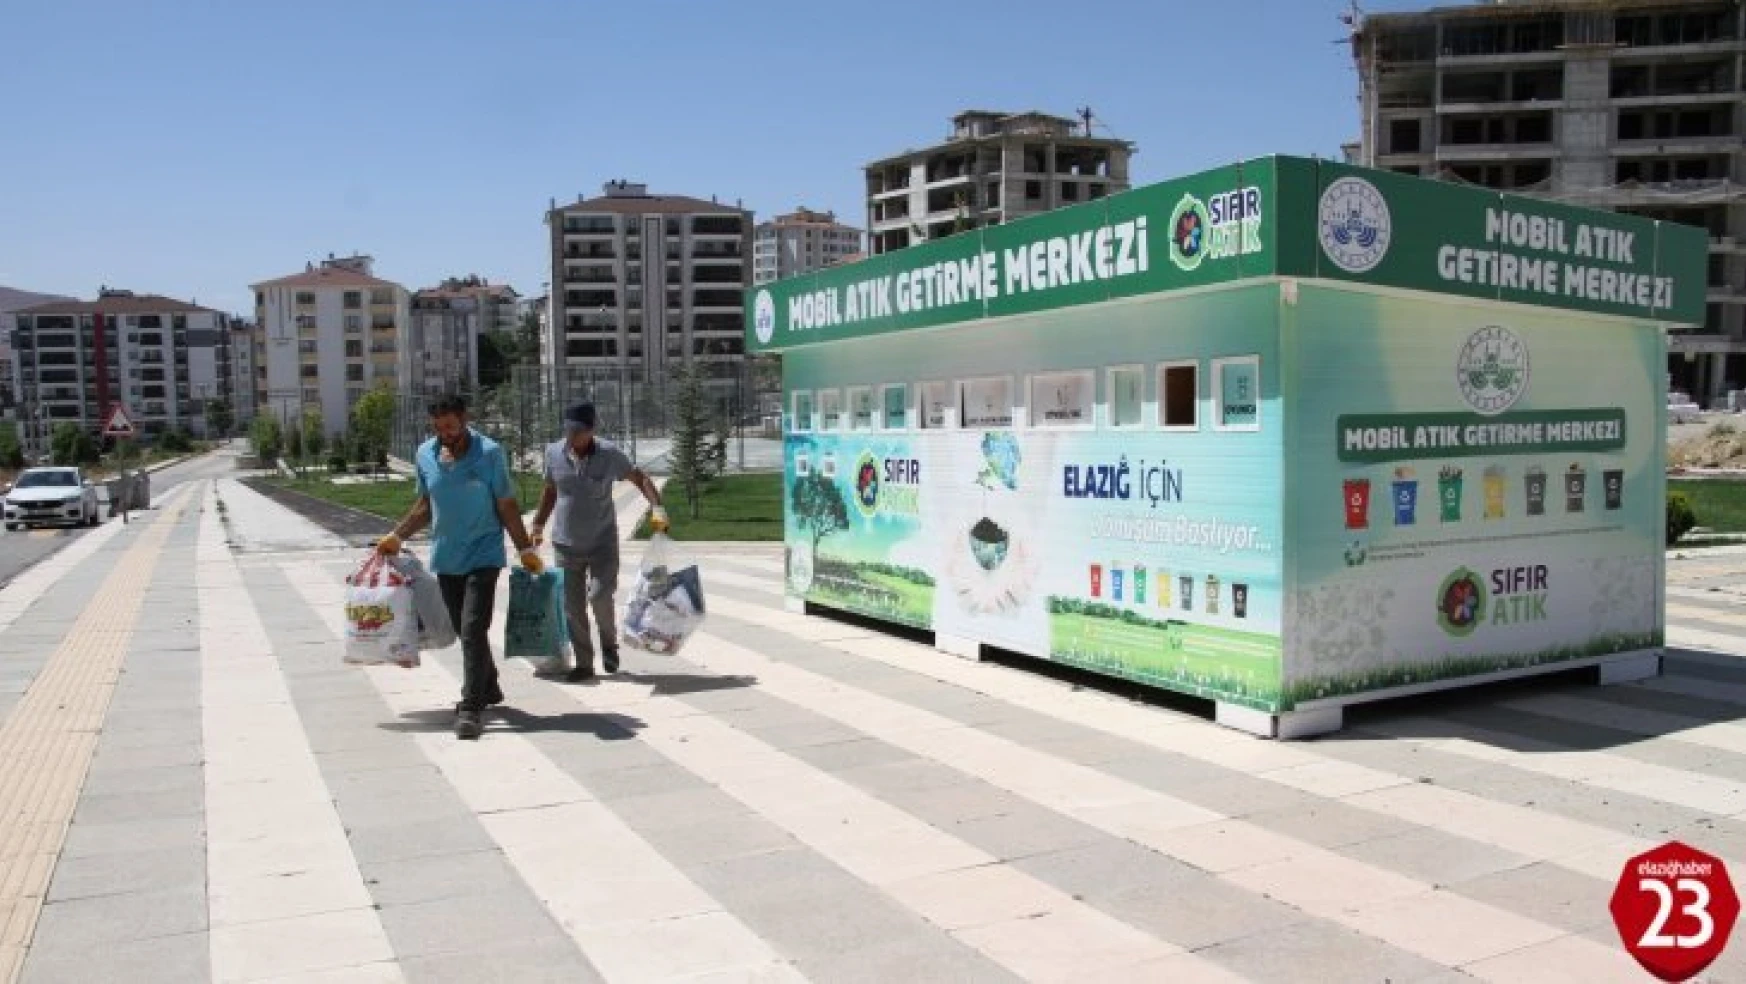 Emine Erdoğan startını vermişti, Elazığ Belediyesi kentin farklı noktalarına 'Mobil Atık Getirme Merkezleri' oluşturdu